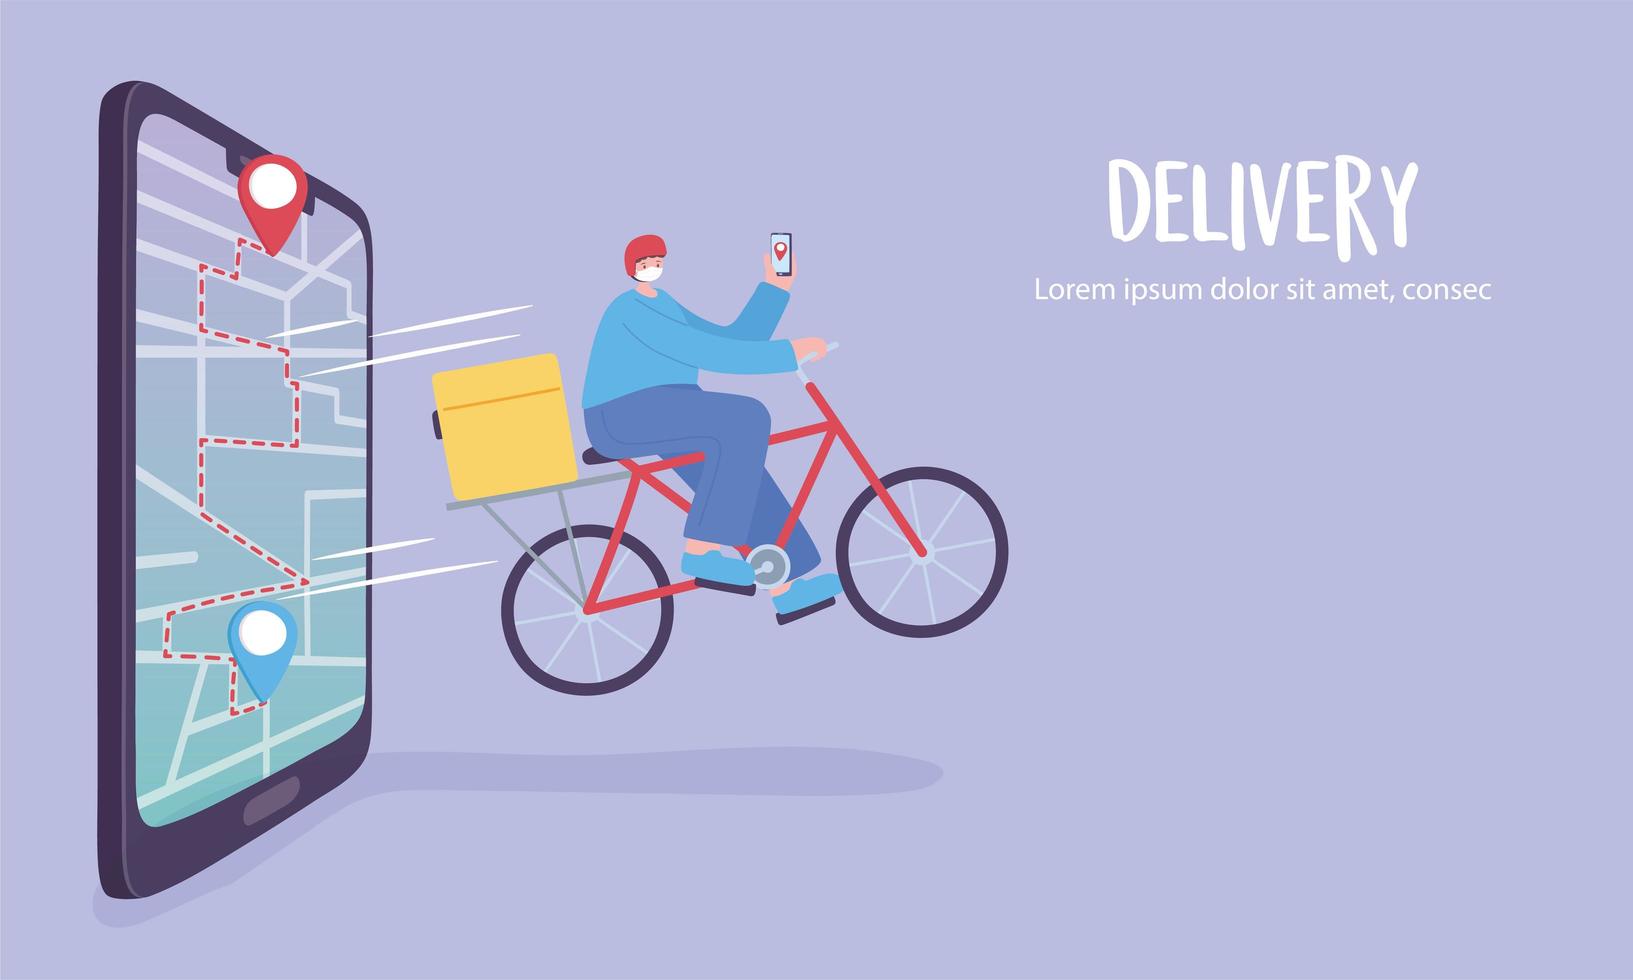 servicio de entrega en línea, hombre en bicicleta, aplicación en un seguimiento de teléfono inteligente, transporte rápido y gratuito, vector